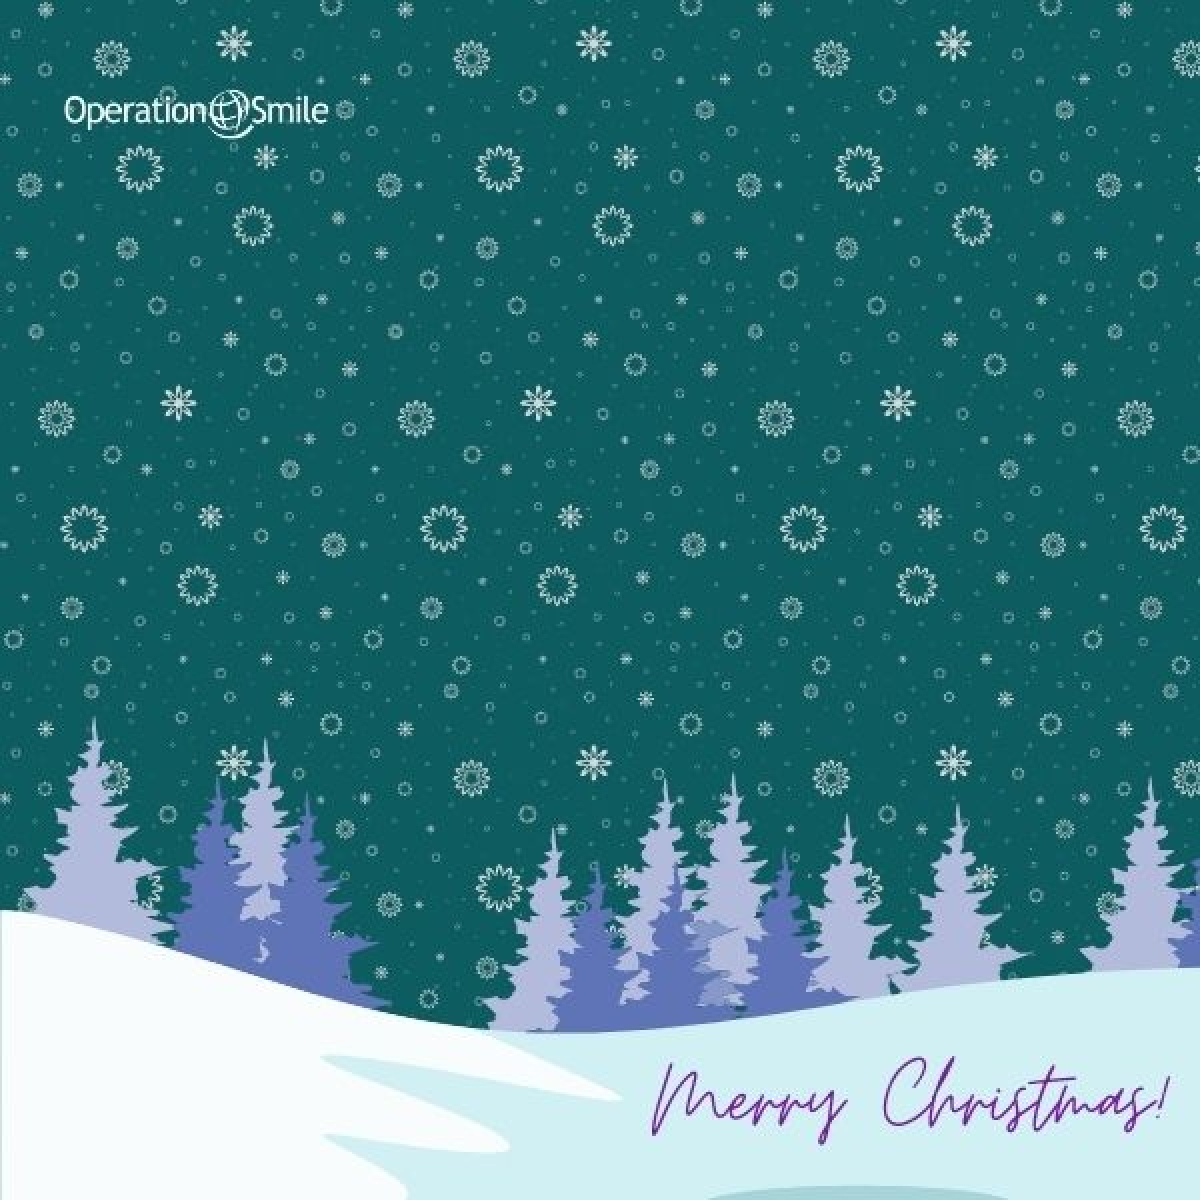 Send our digital Christmas cards  eCards